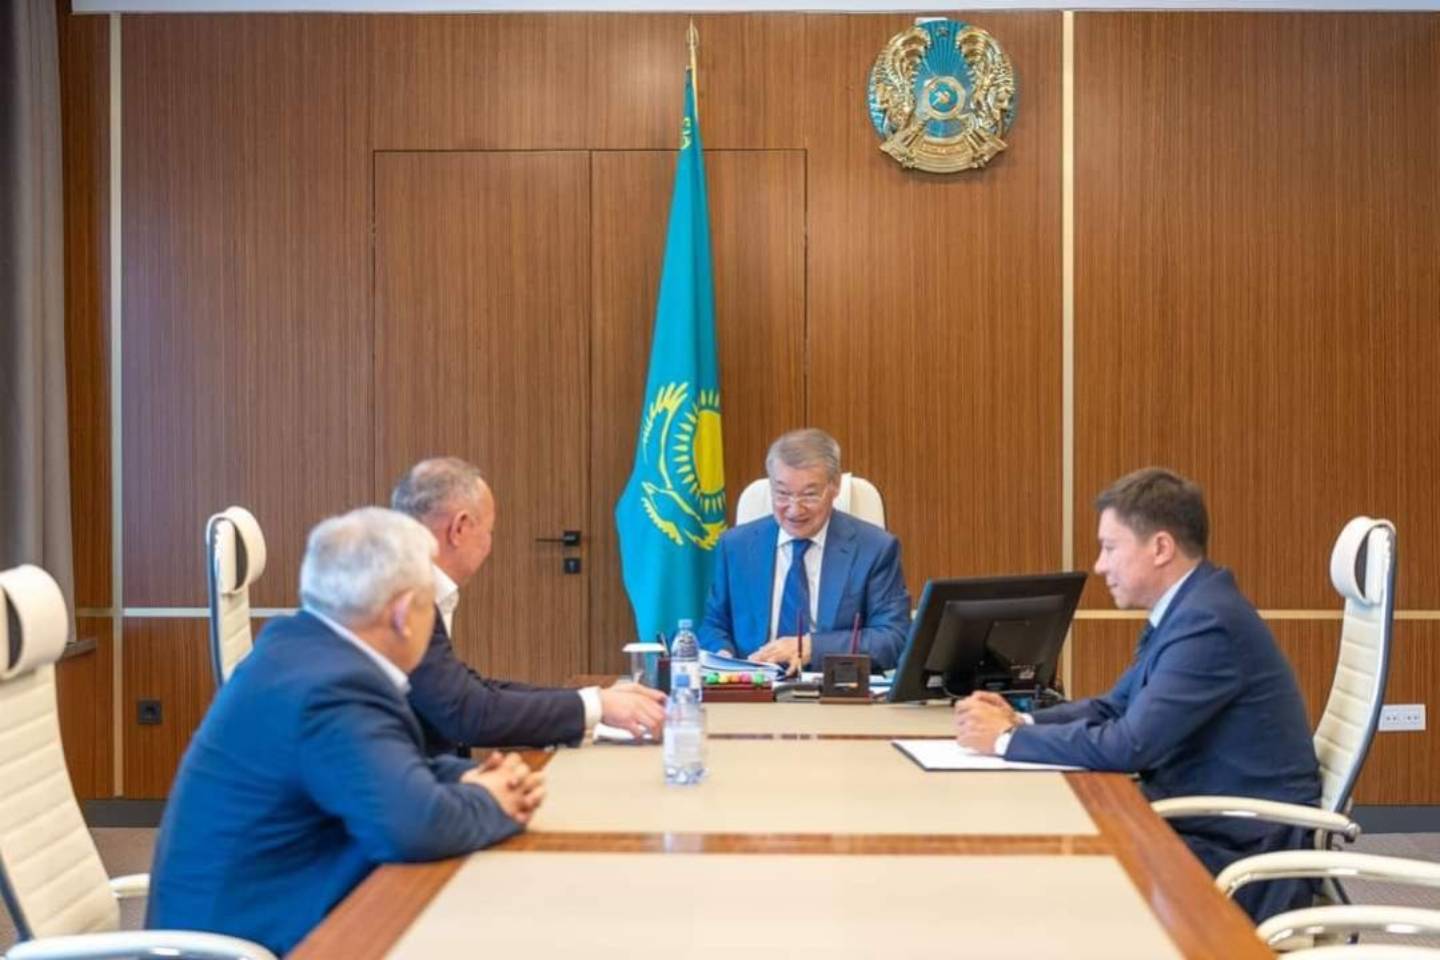 Новости Казахстана / Общество в Казахстане / "Дорожную карту по поддержке предпринимательства" подписали в ВКО